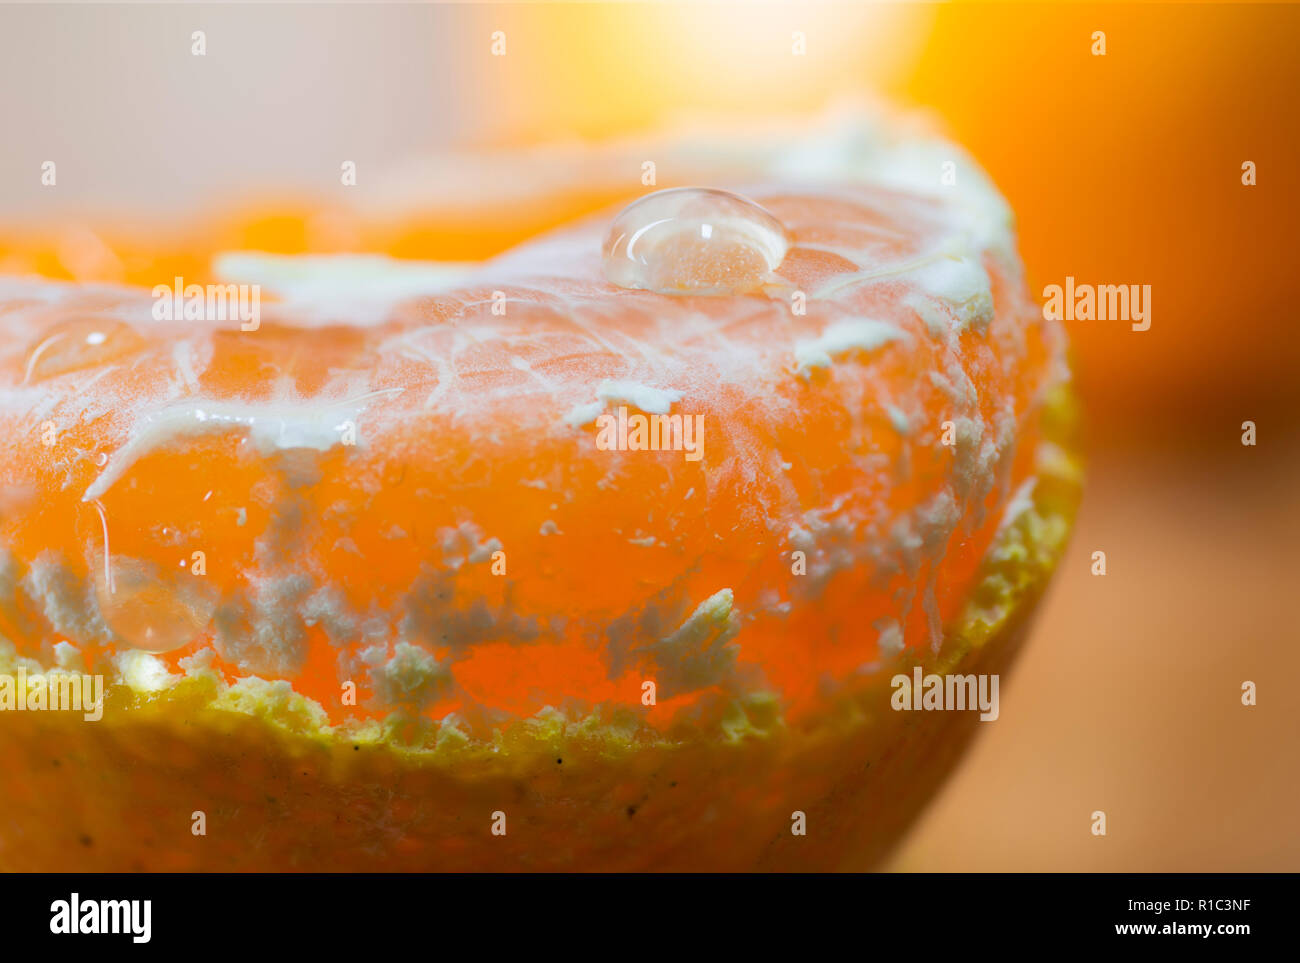 Cerrar macro fresco pelado de frutas con zumo de naranja procedente de pulpas de naranja. Foto de stock